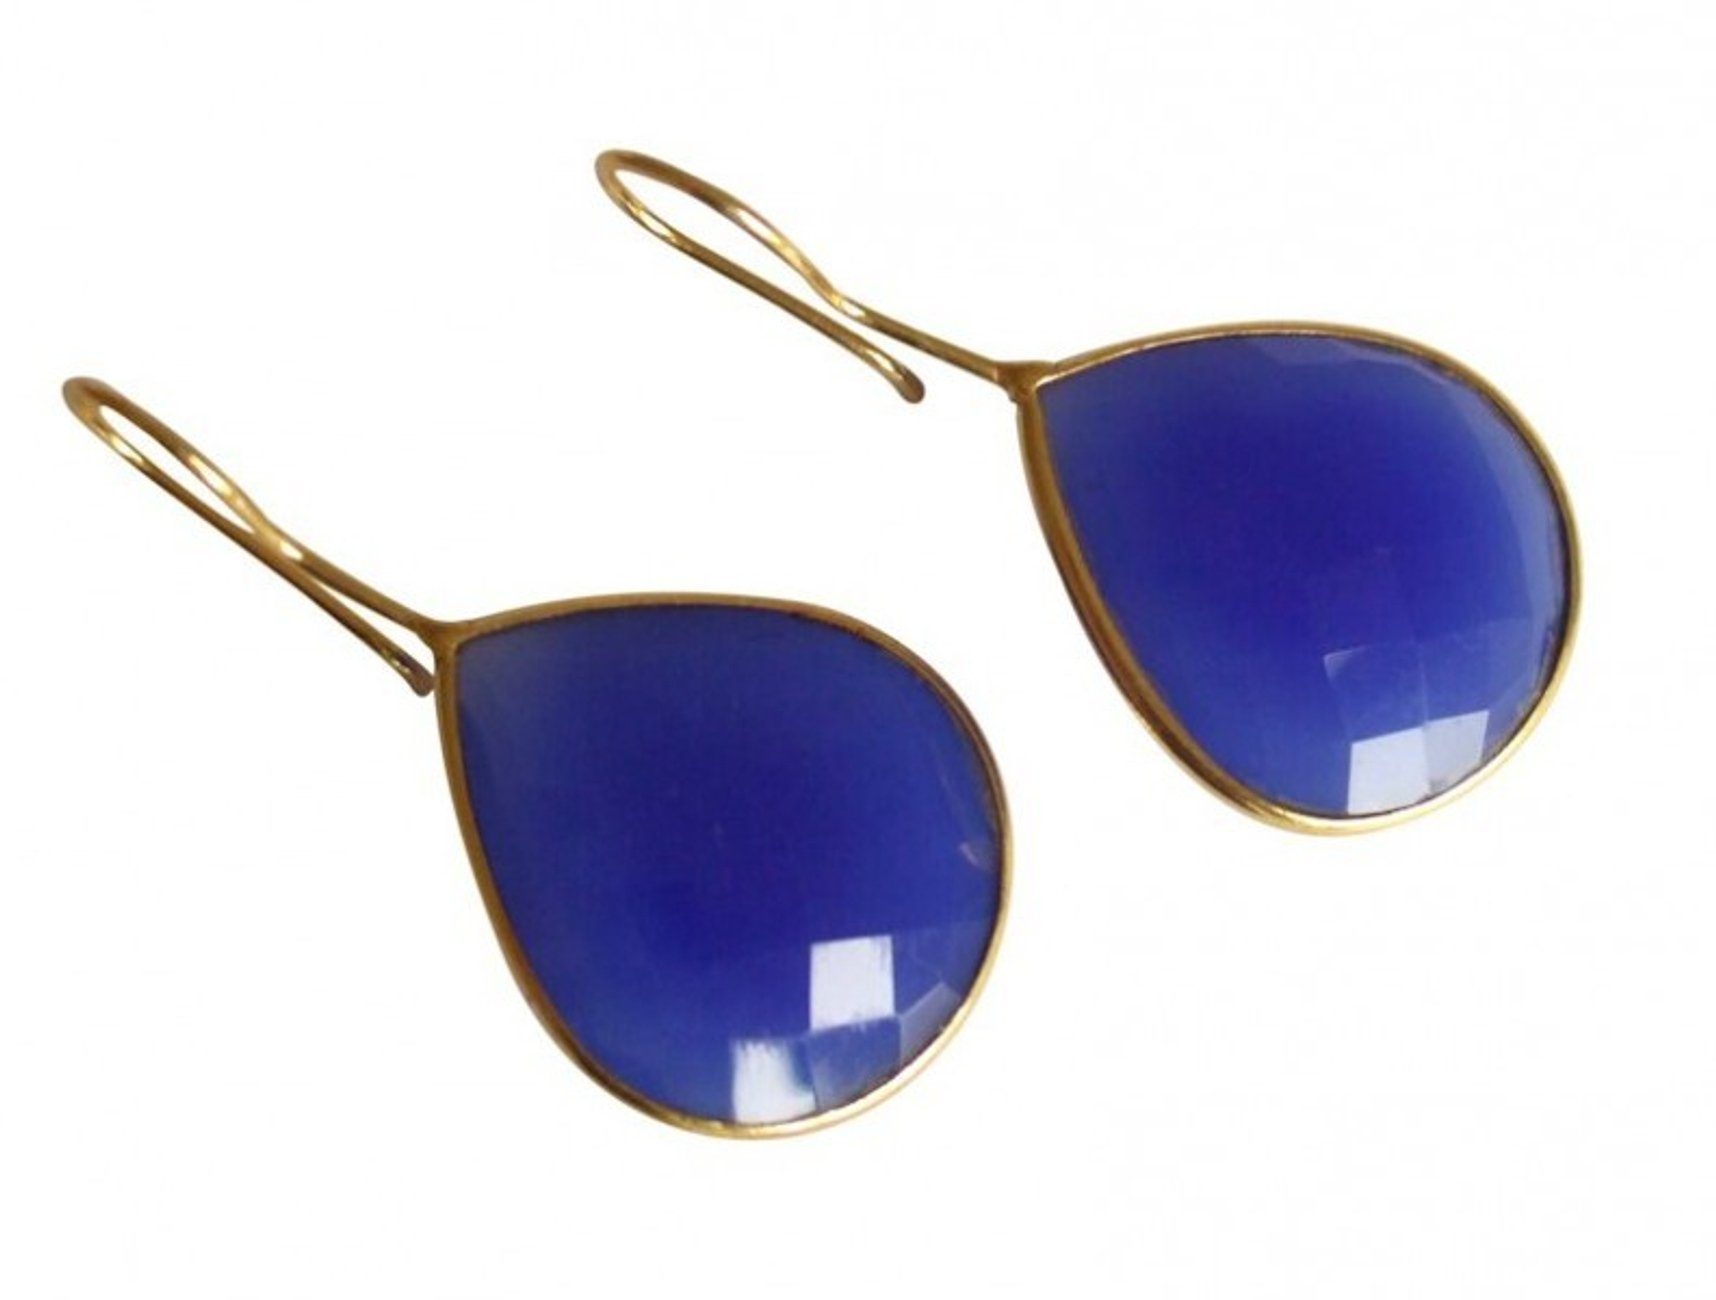 Damen Schmuck Gemshine Paar Ohrhänger Blaue Onyx Tropfen, Made in Spain